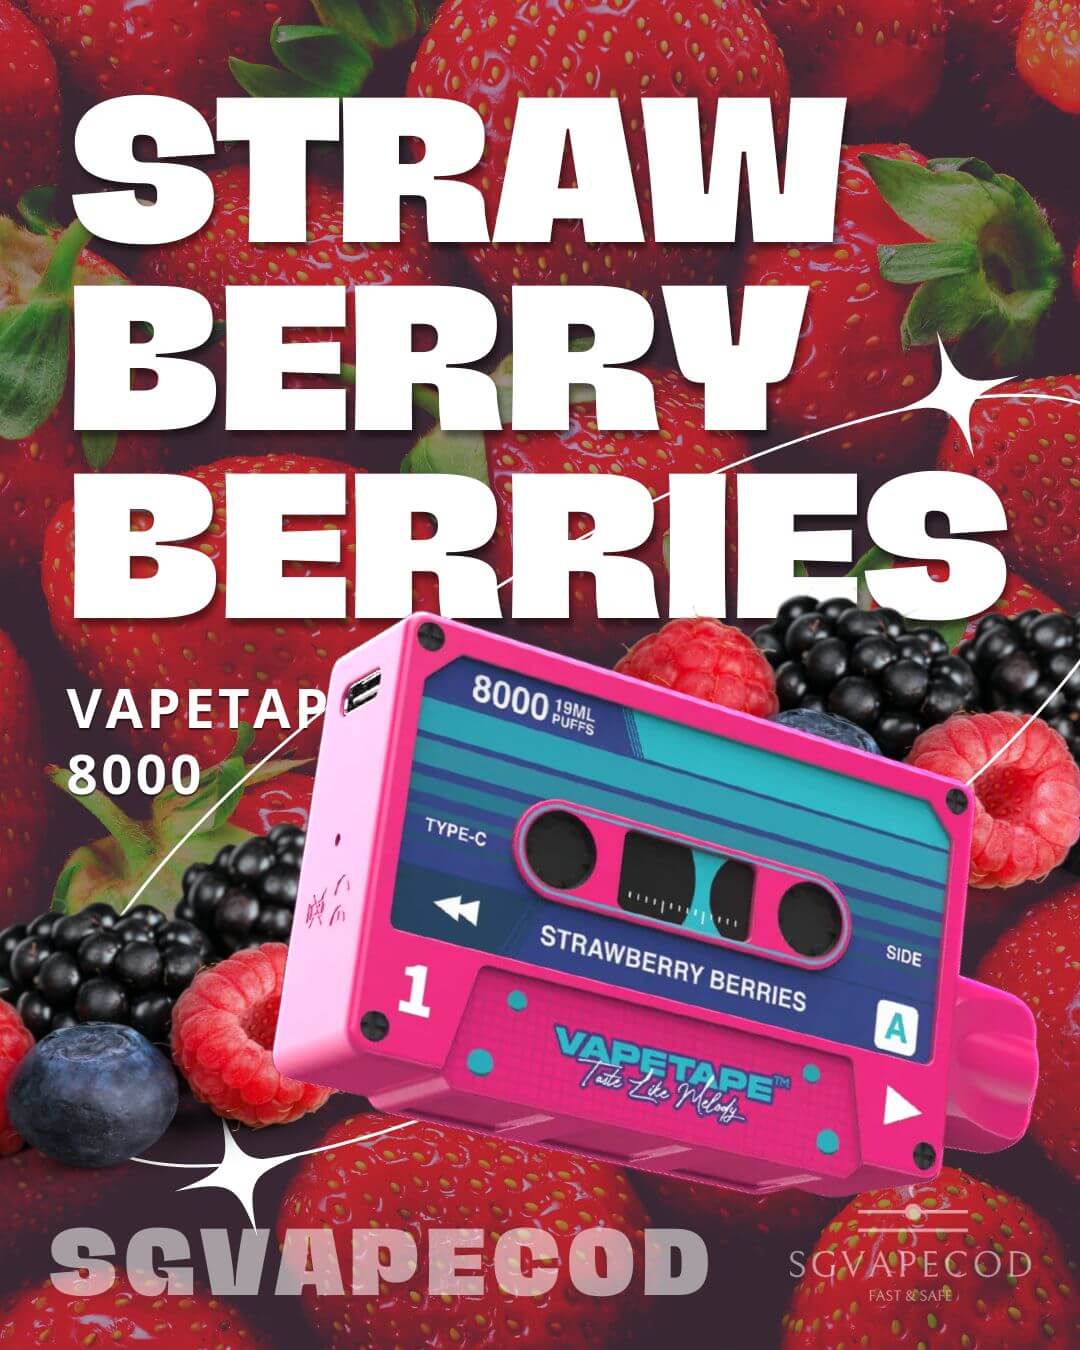 Vapetape-8000-Strawberry-Berries-(SG VAPE COD)